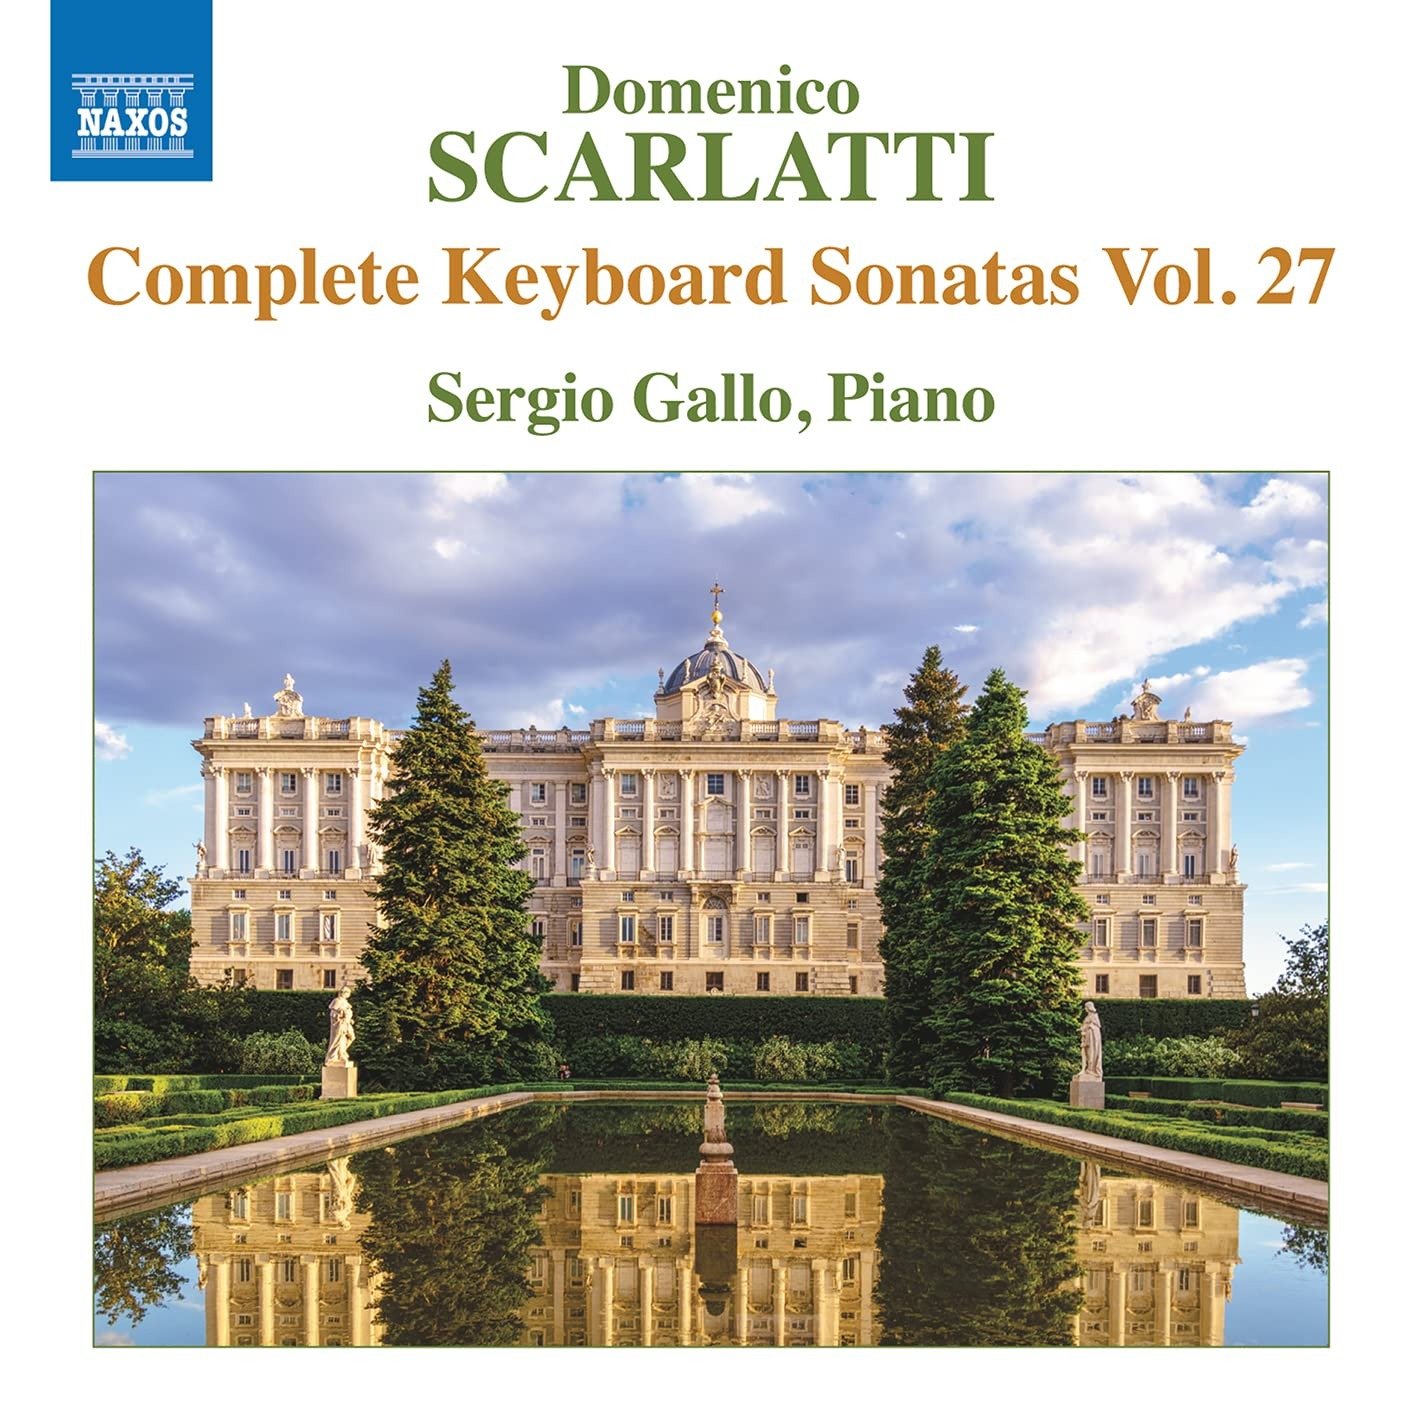 CD Shop - GALLO, SERGIO DOMENICO SCARLATTI: COMPLETE KEYBOARD SONATAS VOL. 27